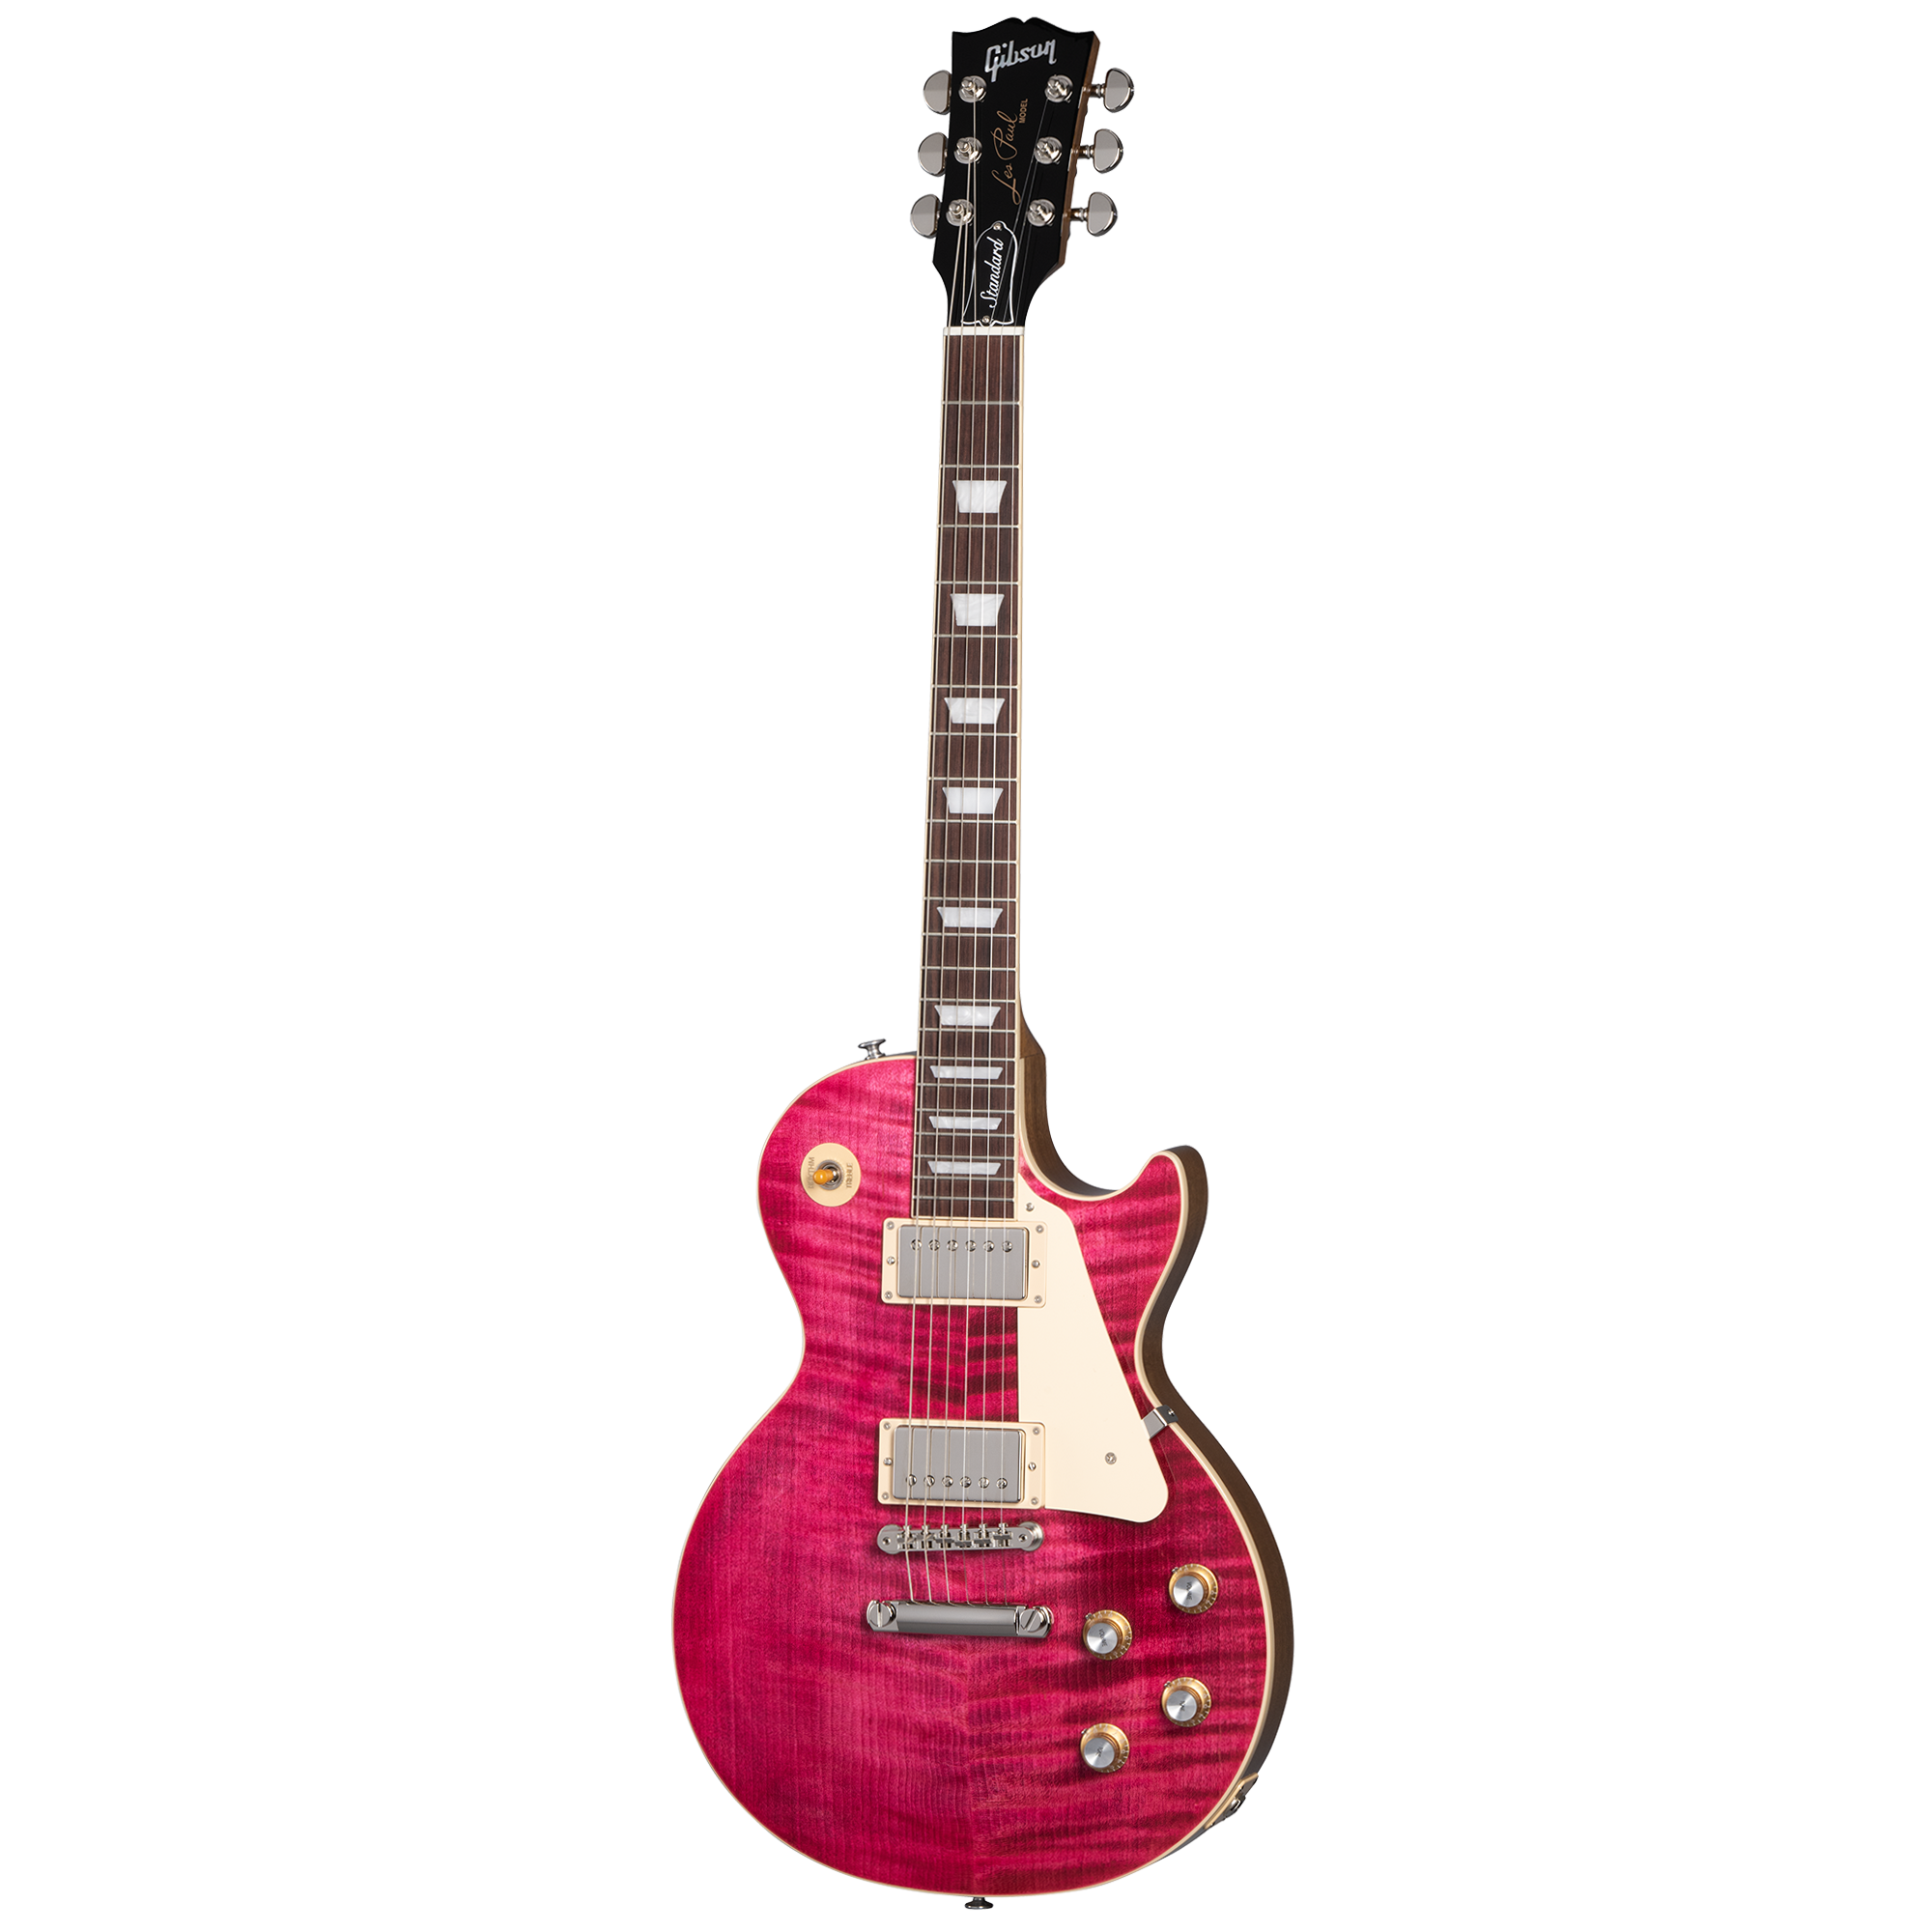 Billede af Gibson Les Paul Standard 60s Figured Top Translucent Fuchsia